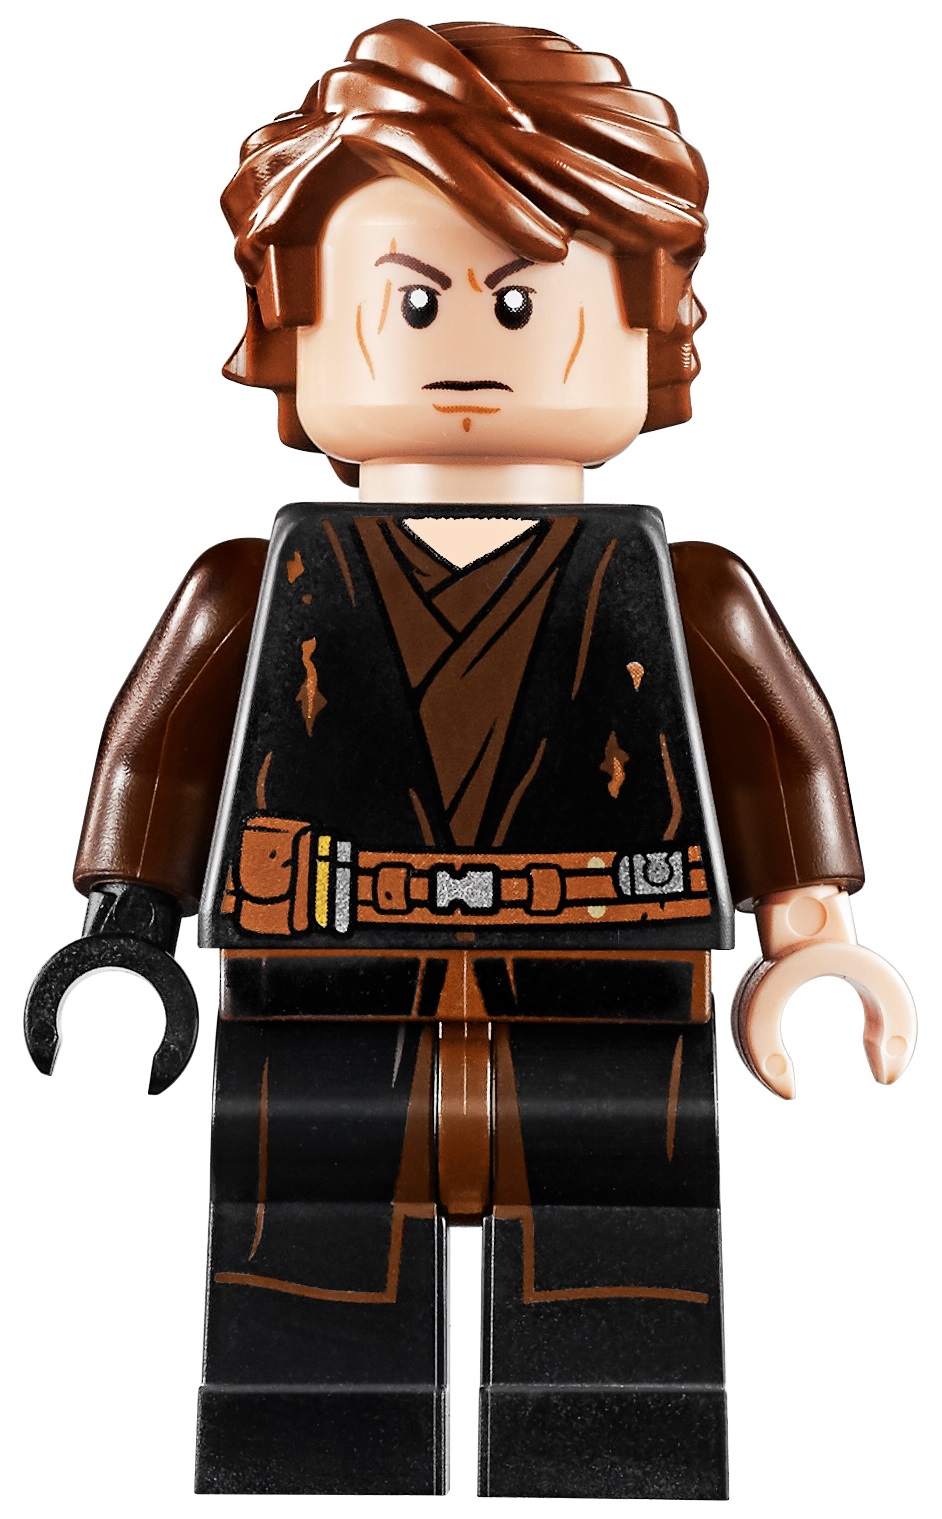 Star Wars KIT FISTO Custom 3D Printed Head on Custom Printed Lego Minifigure 